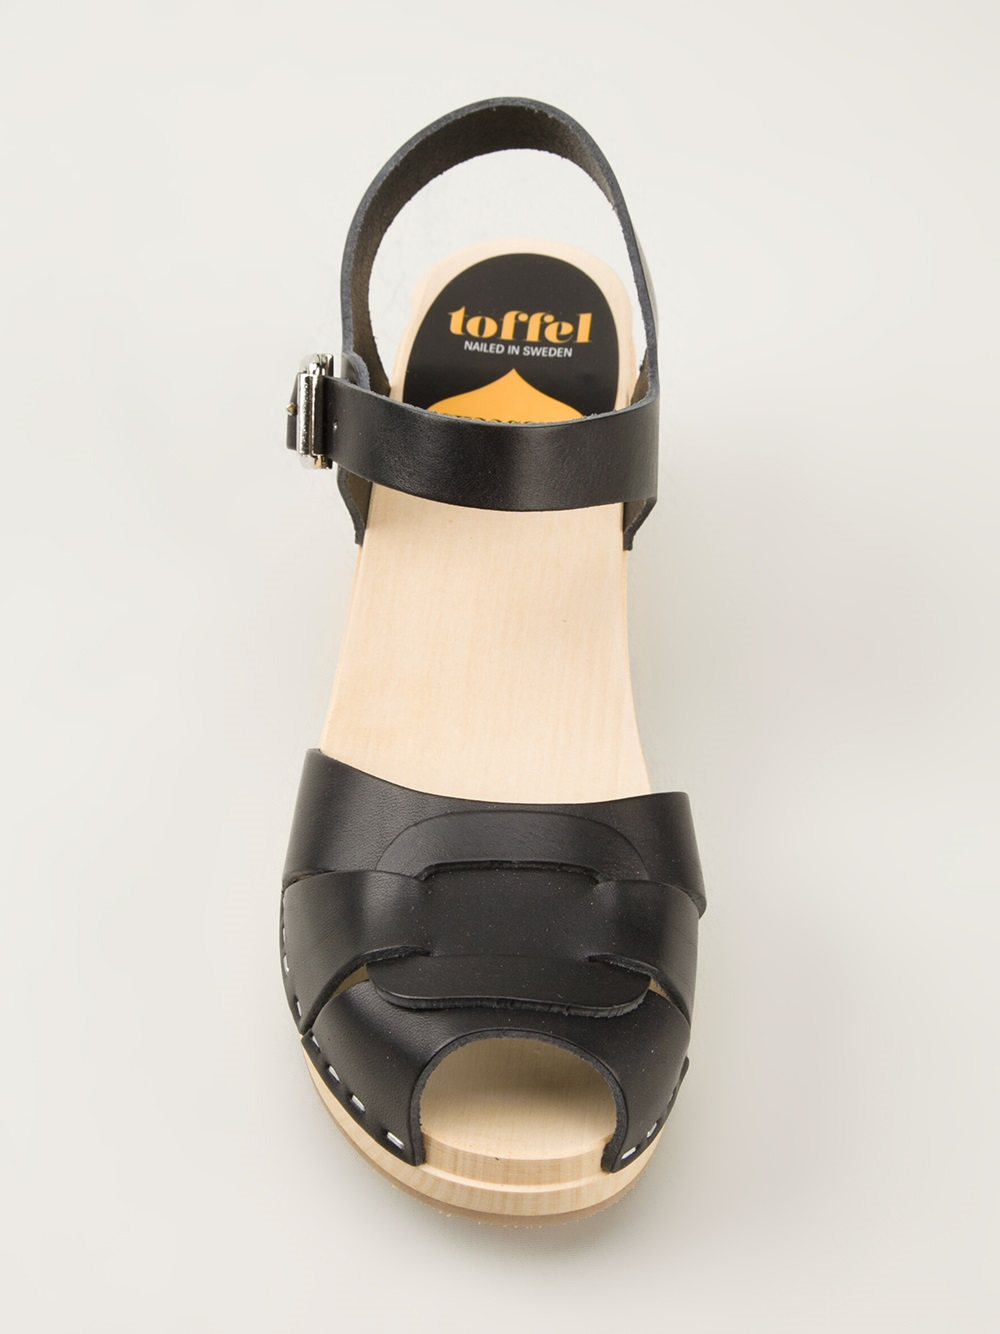 Discover more than 83 swedish wooden sandals super hot - dedaotaonec